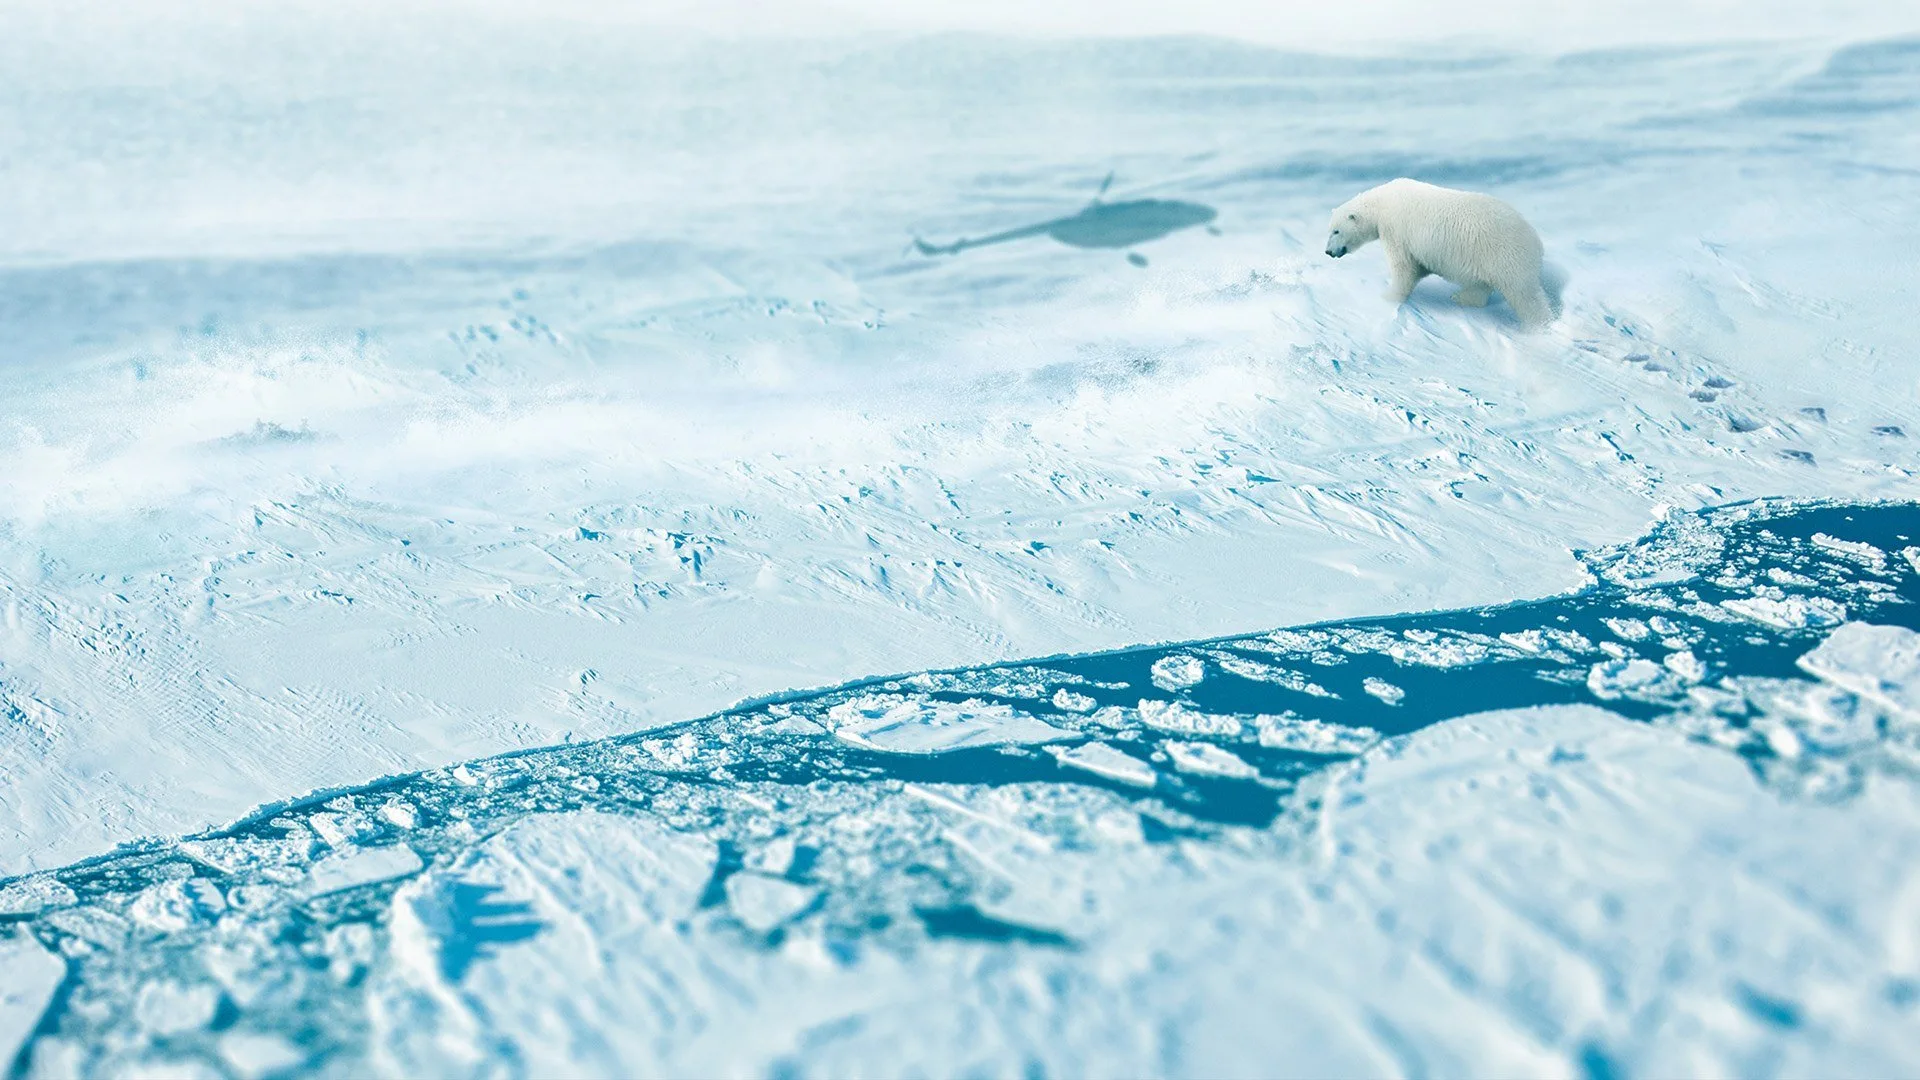 Artico selvaggio - Meraviglie tra i ghiacci